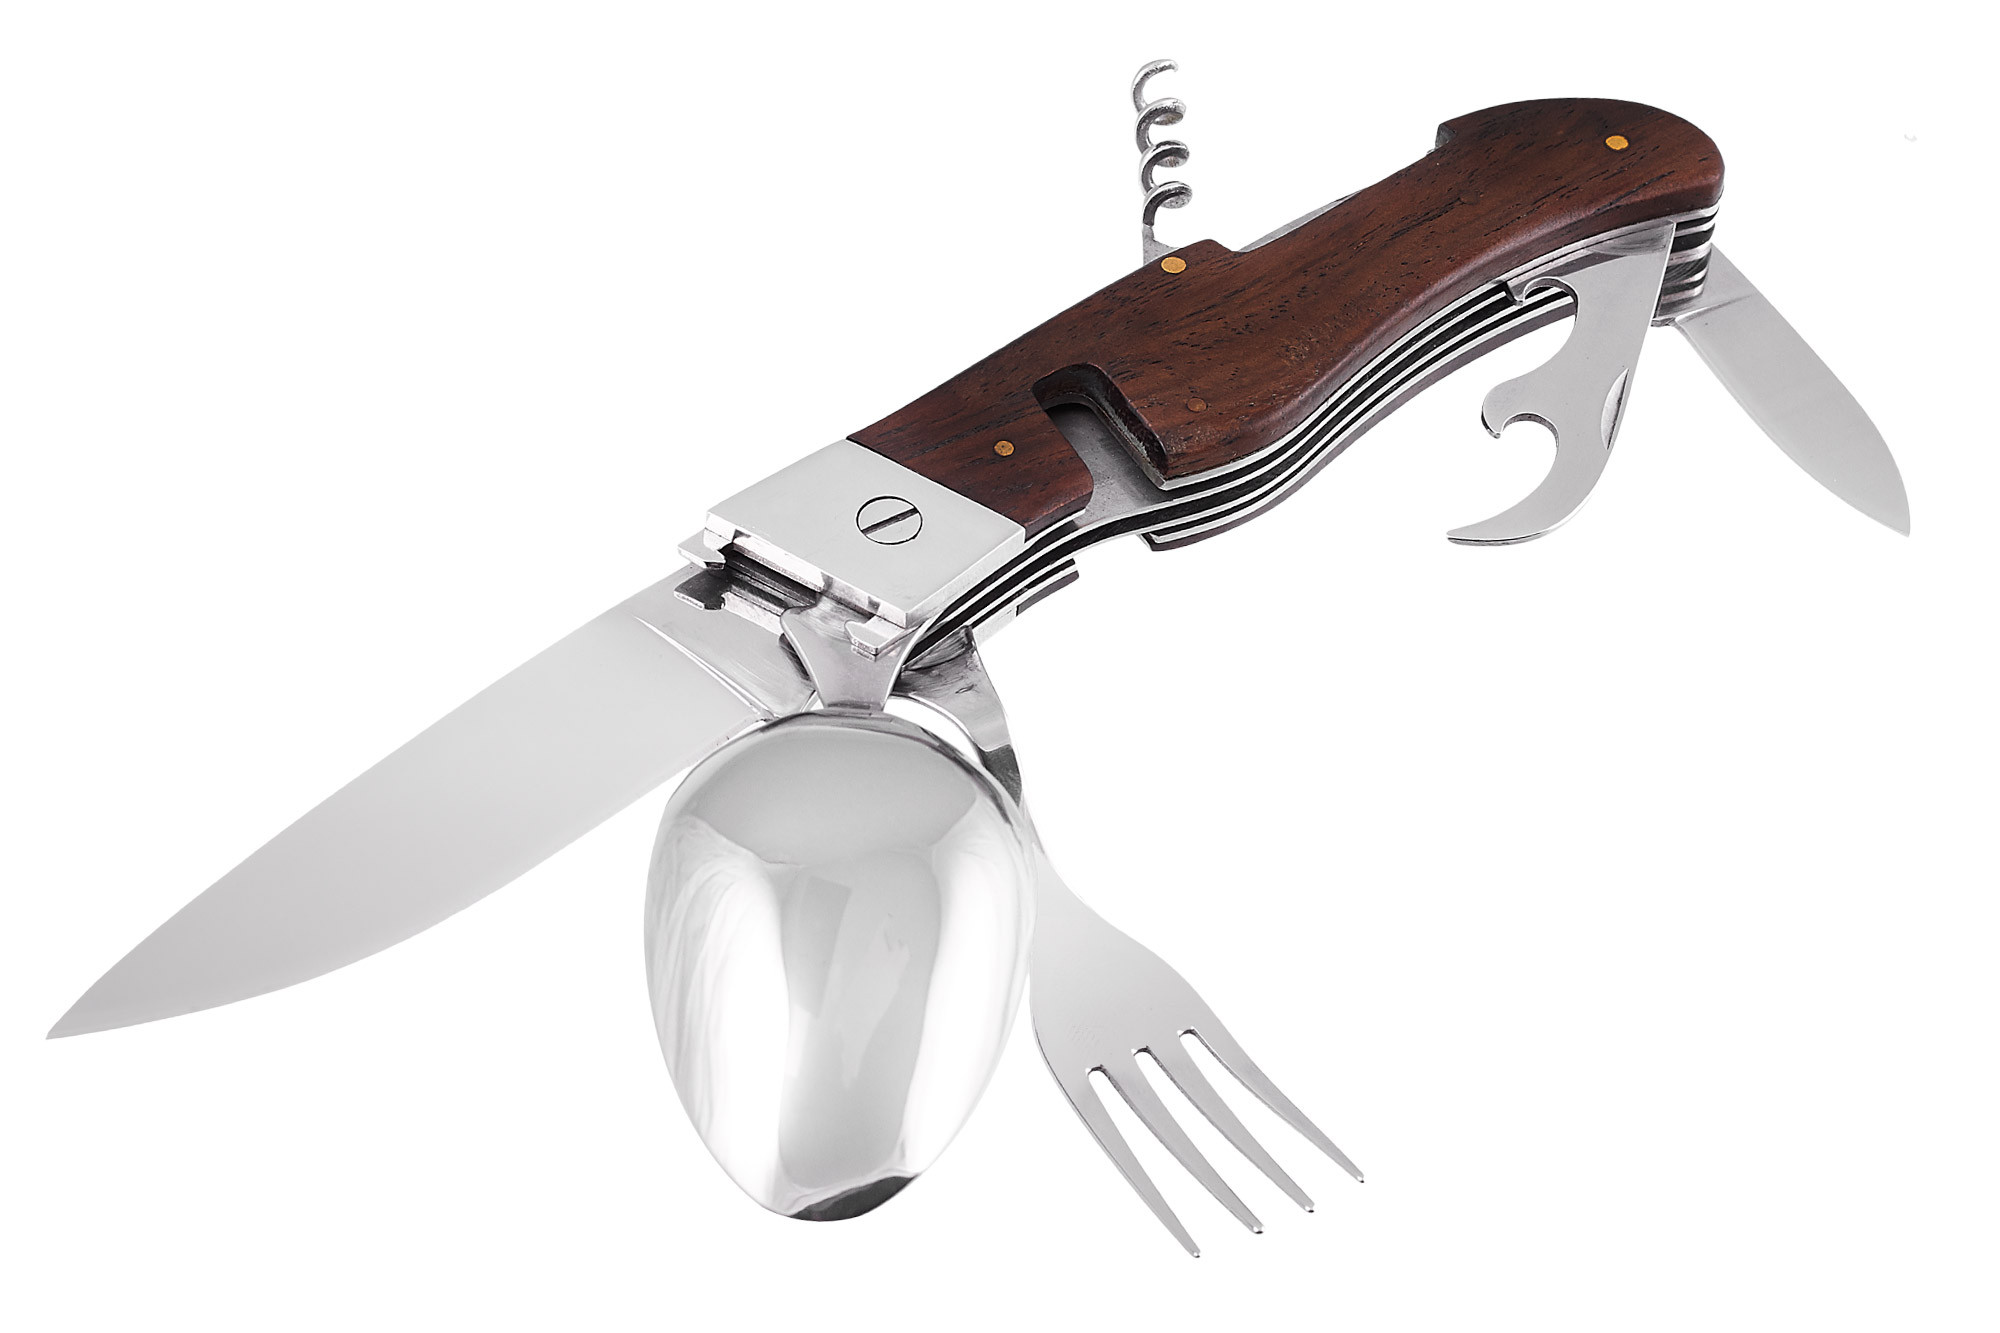 Лучшие туристические ножи. Нож многофункциональный Витязь Гурман b238-34. Нож 440c Steel складной Grand way. Borz`Knife нож туристический складной. Нож складной Grand way e-34.